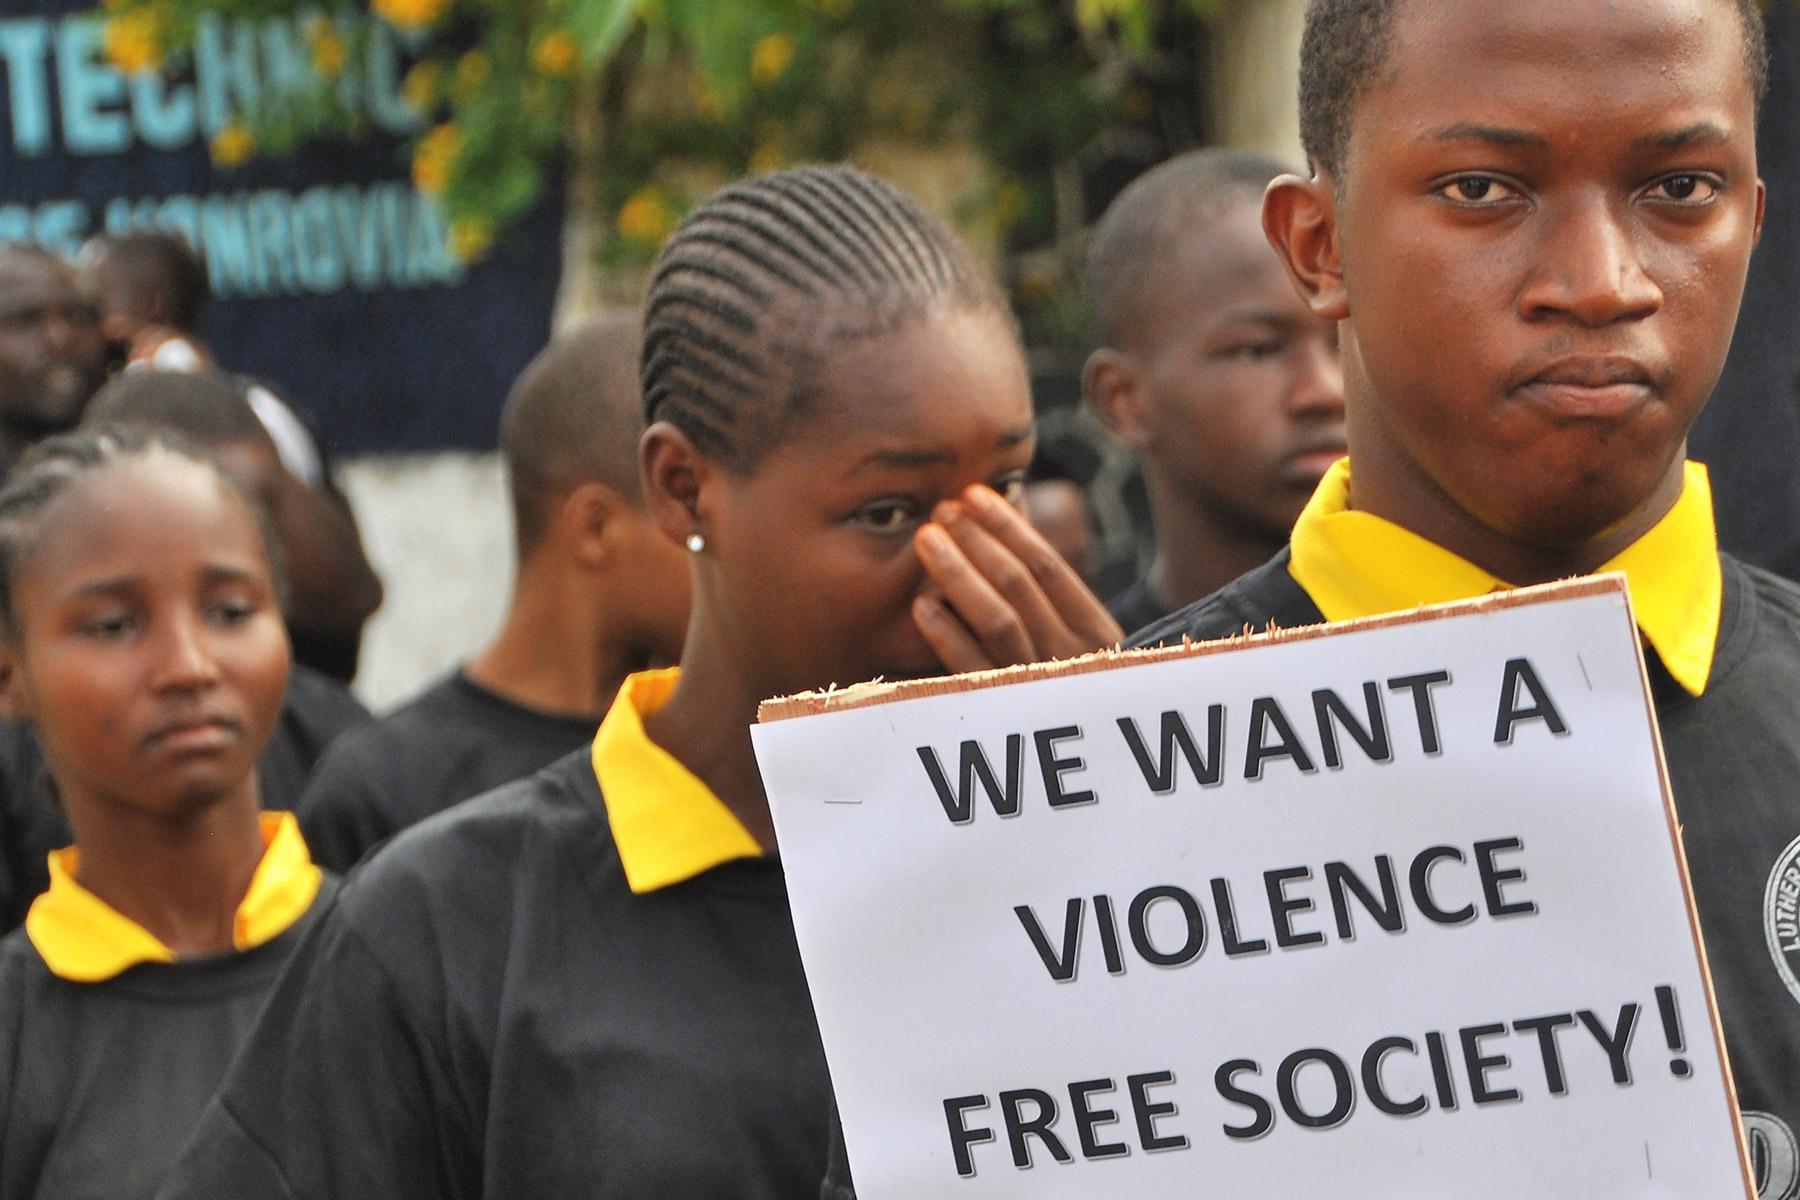 Kinder und Jugendliche aus vier lutherischen Schulen in Liberia nehmen an einem Marsch gegen alle Formen von Gewalt in ihrem Land teil. Foto: LCL/Linda Johnson Seyenkulo